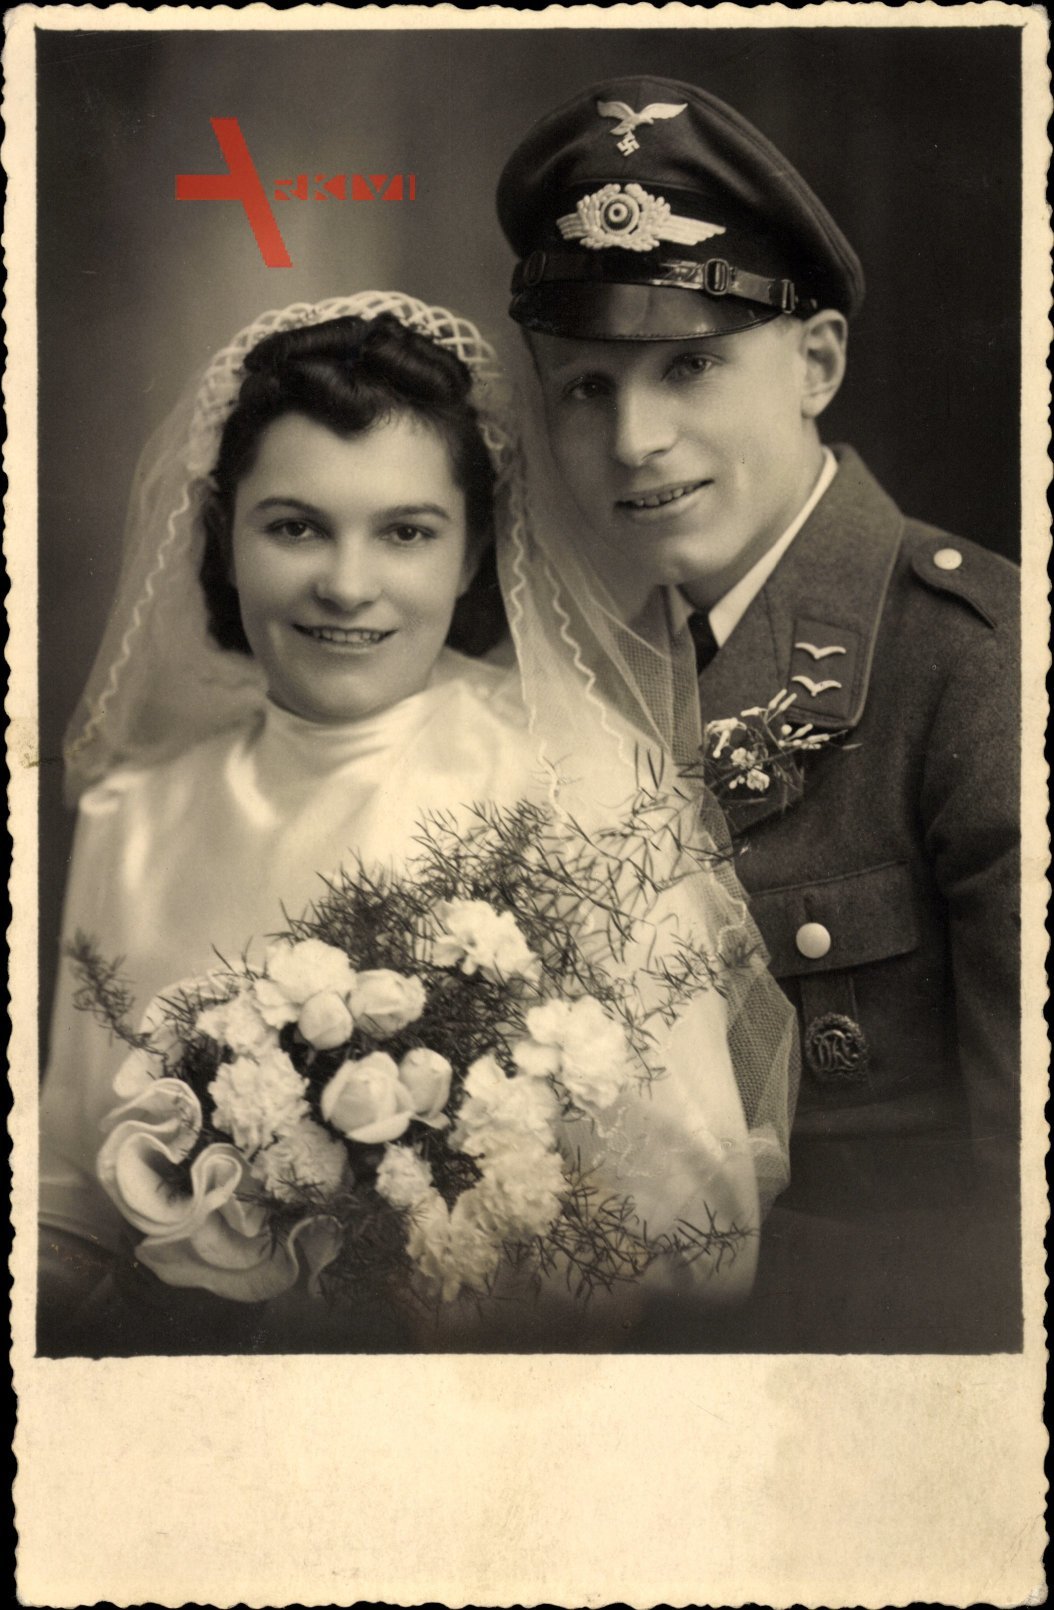 Deutsche Wehrmacht, Luftwaffe, Gefreiter in Uniform, Kragenspiegel, Hochzeitsfoto,Brautkleid